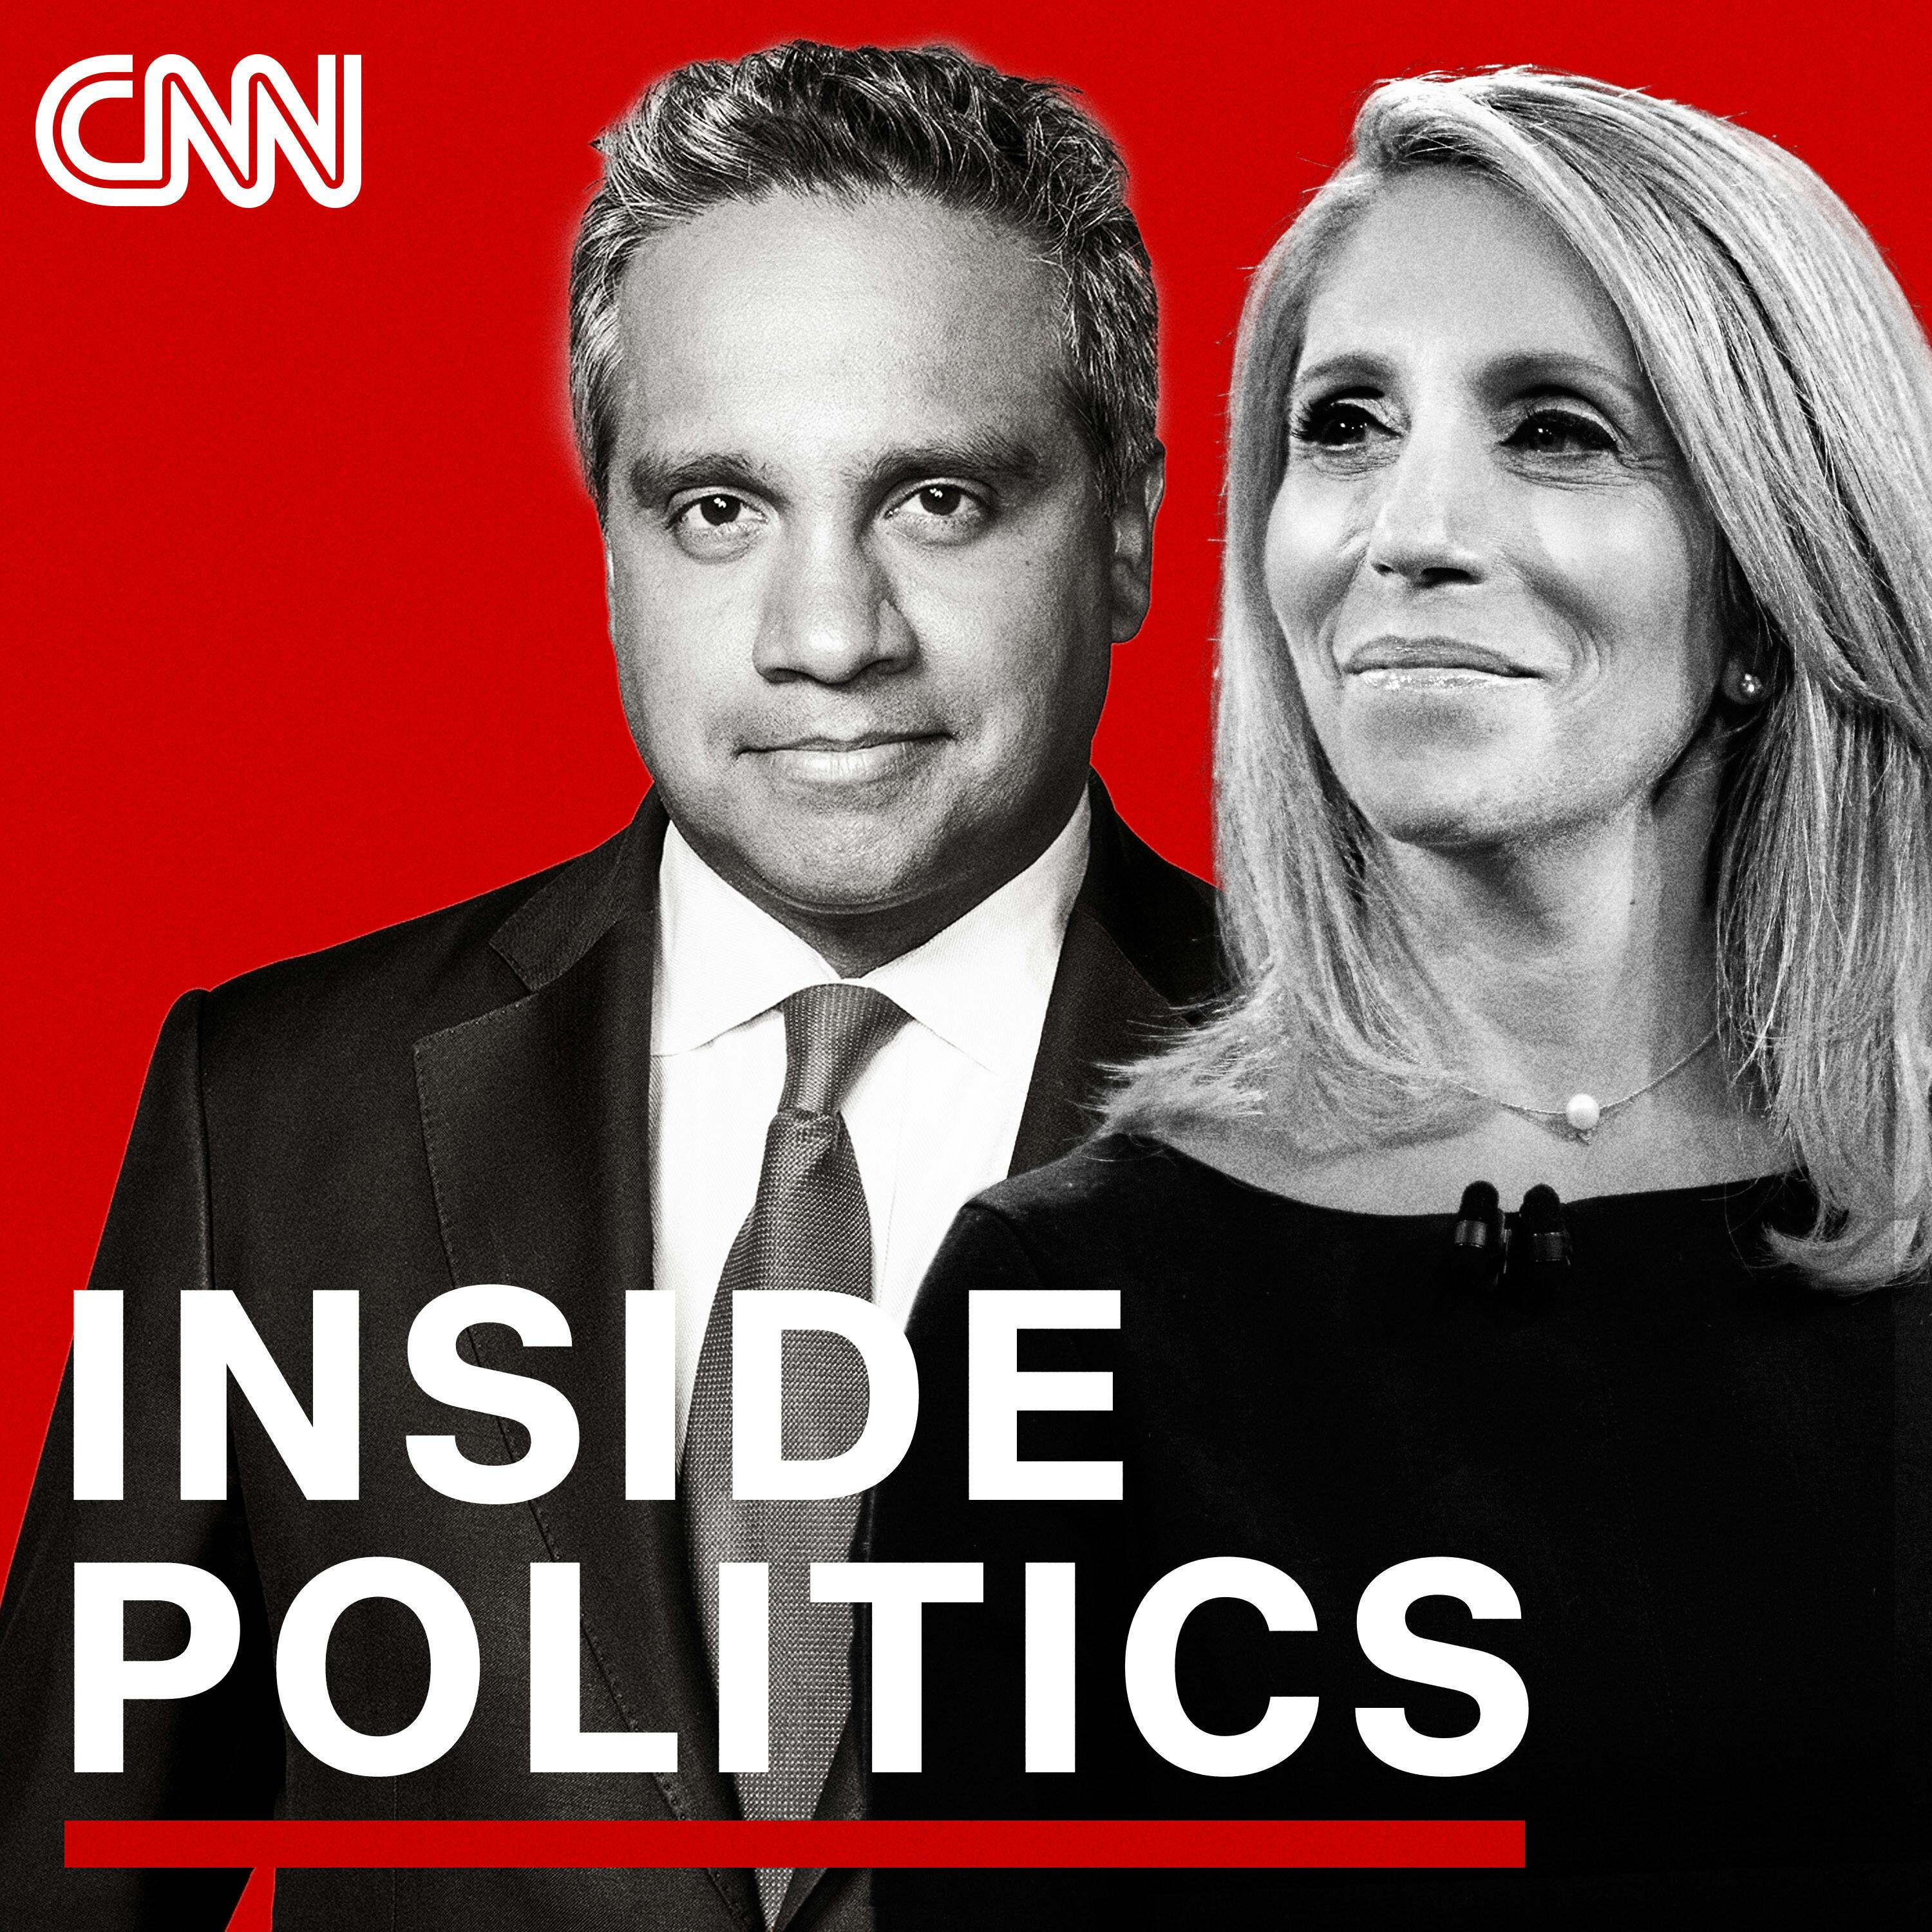 Inside Politics Podcast Update For Thursday, August 26, 2021